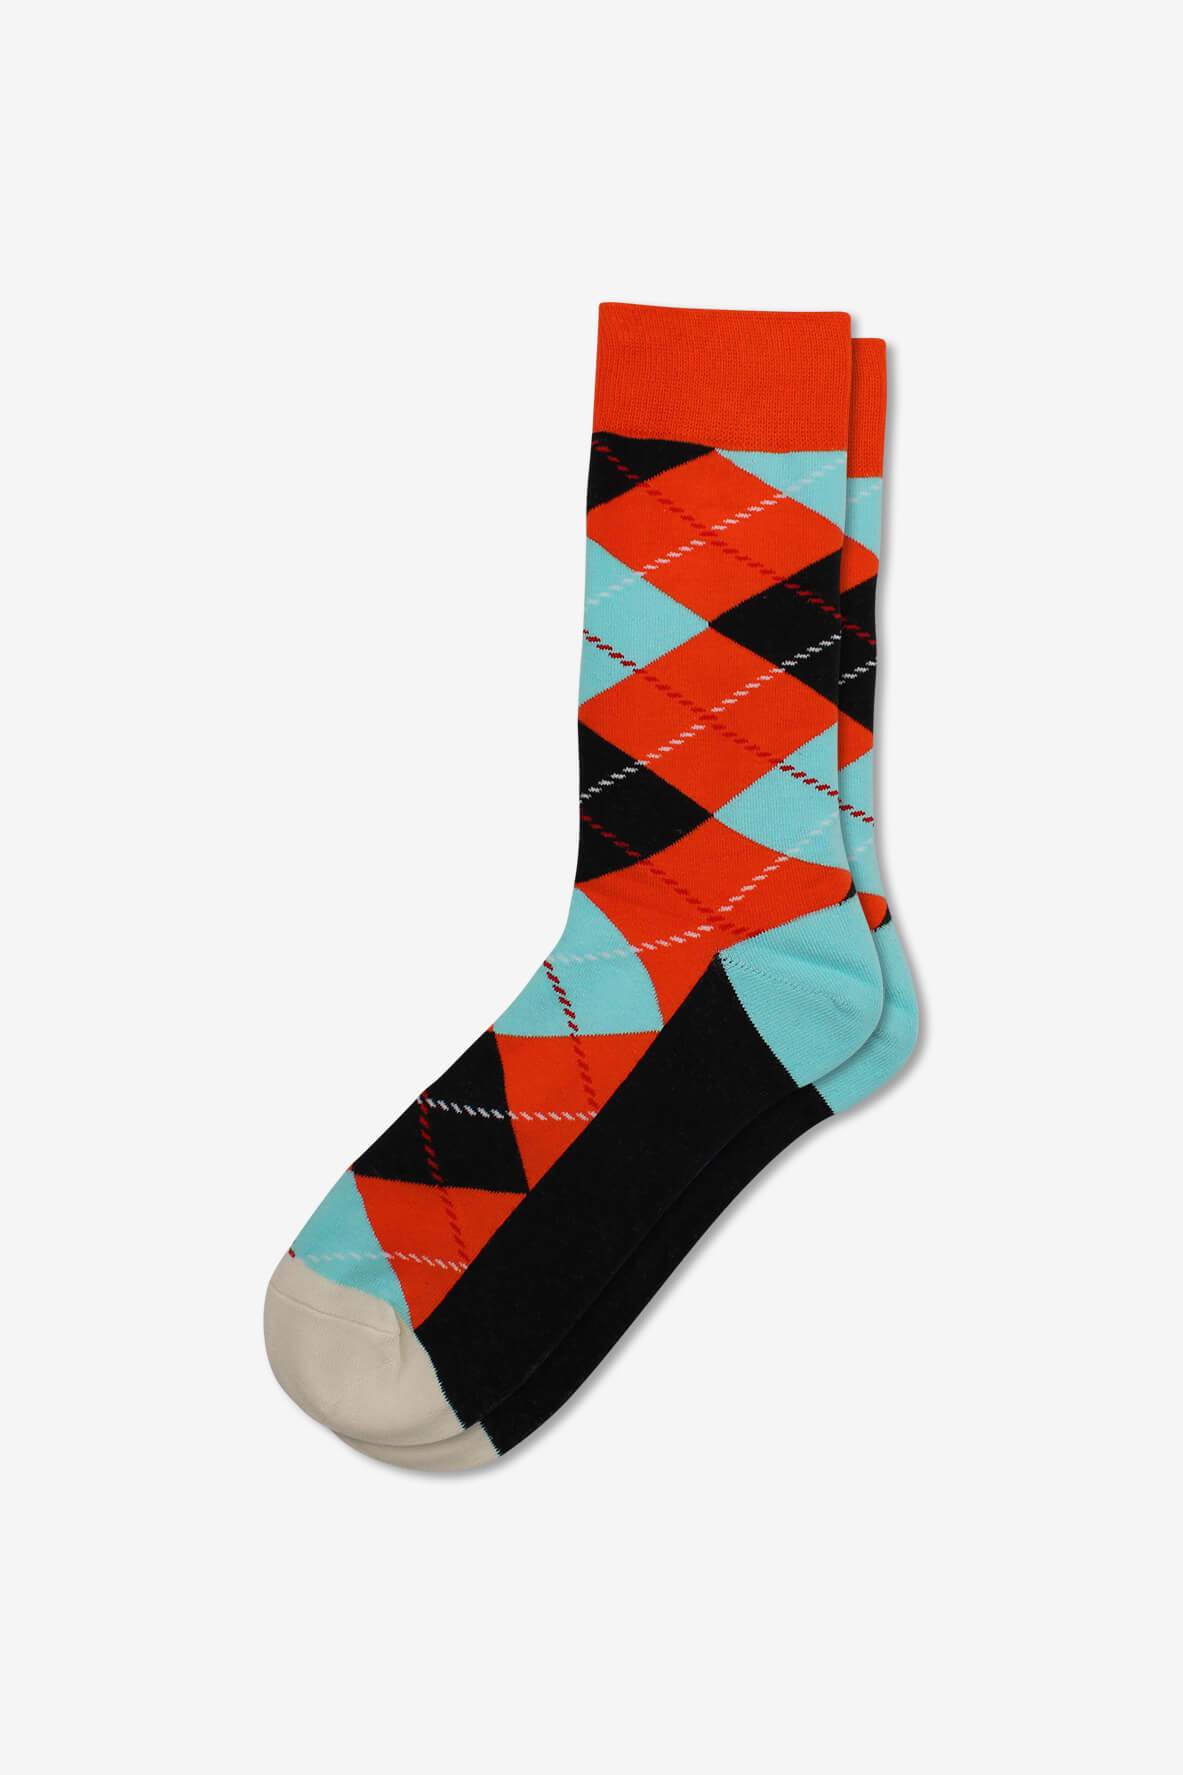 Socks IMG_5244, socks, GoTie